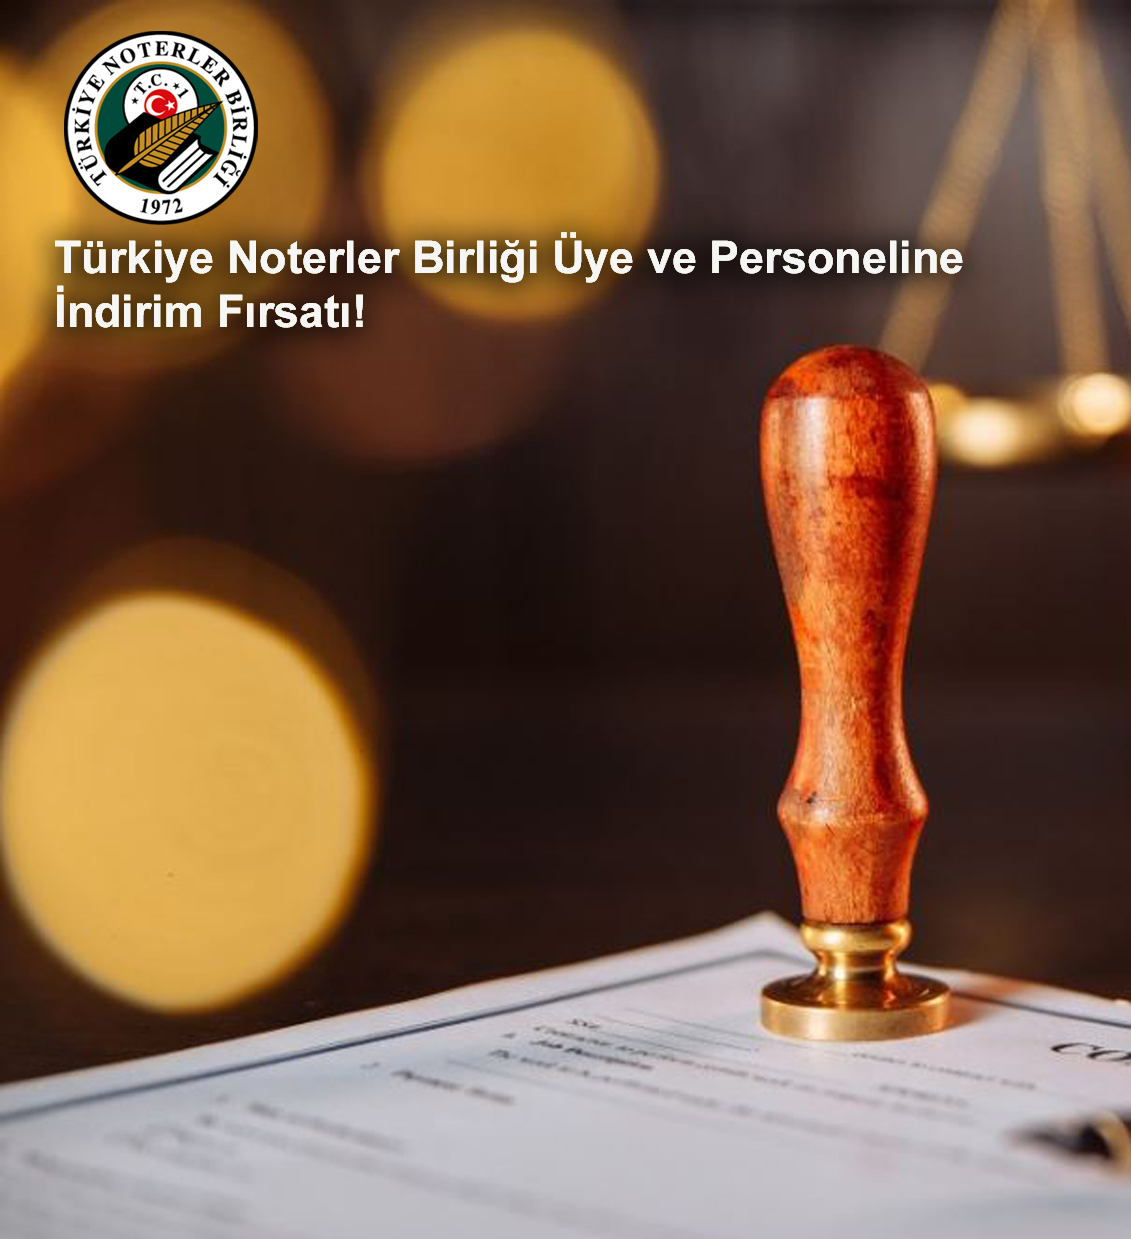 Rabattmöglichkeit für Mitglieder und Mitarbeiter des Notarverbandes der Türkei!